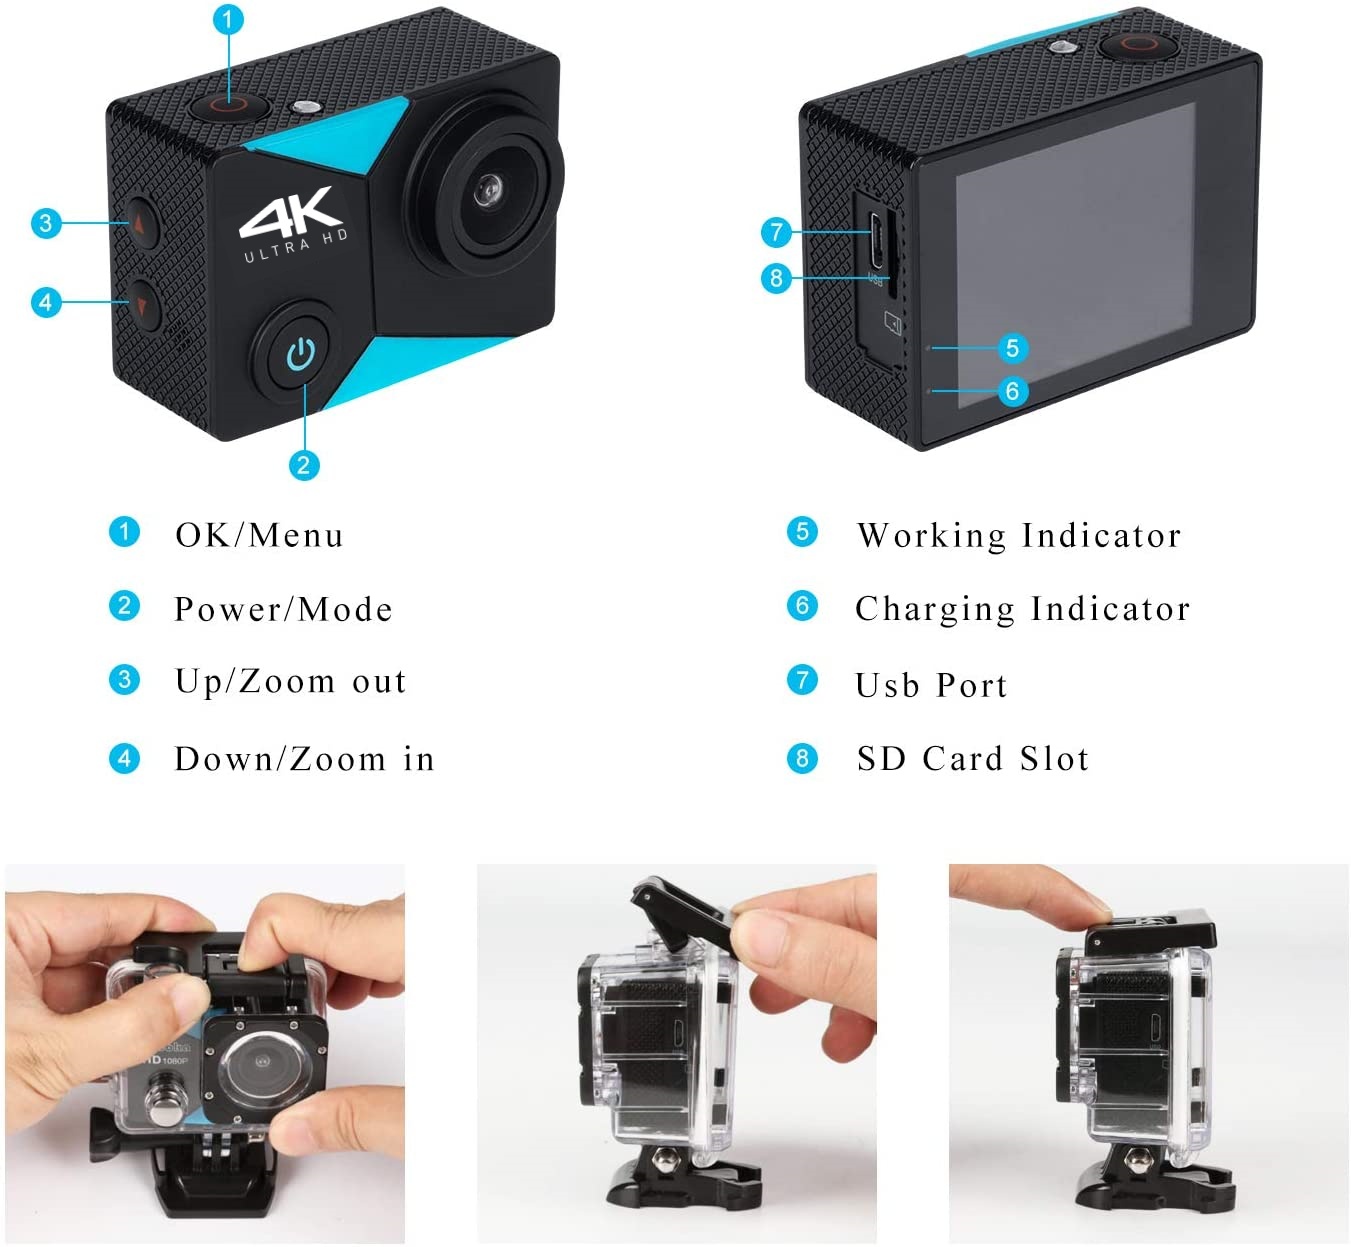 ข้อมูลเพิ่มเติมของ Nanotech กล้องกันน้ำ ถ่ายใต้น้ำ  มีระบบกันสั่นครบ 4K Ultra HD waterproof WIFI FREE Remote - สีดำ K80 2022 ล่าสุด แถมฟรี รีโมท+ไมค์ คุ้มที่สุด